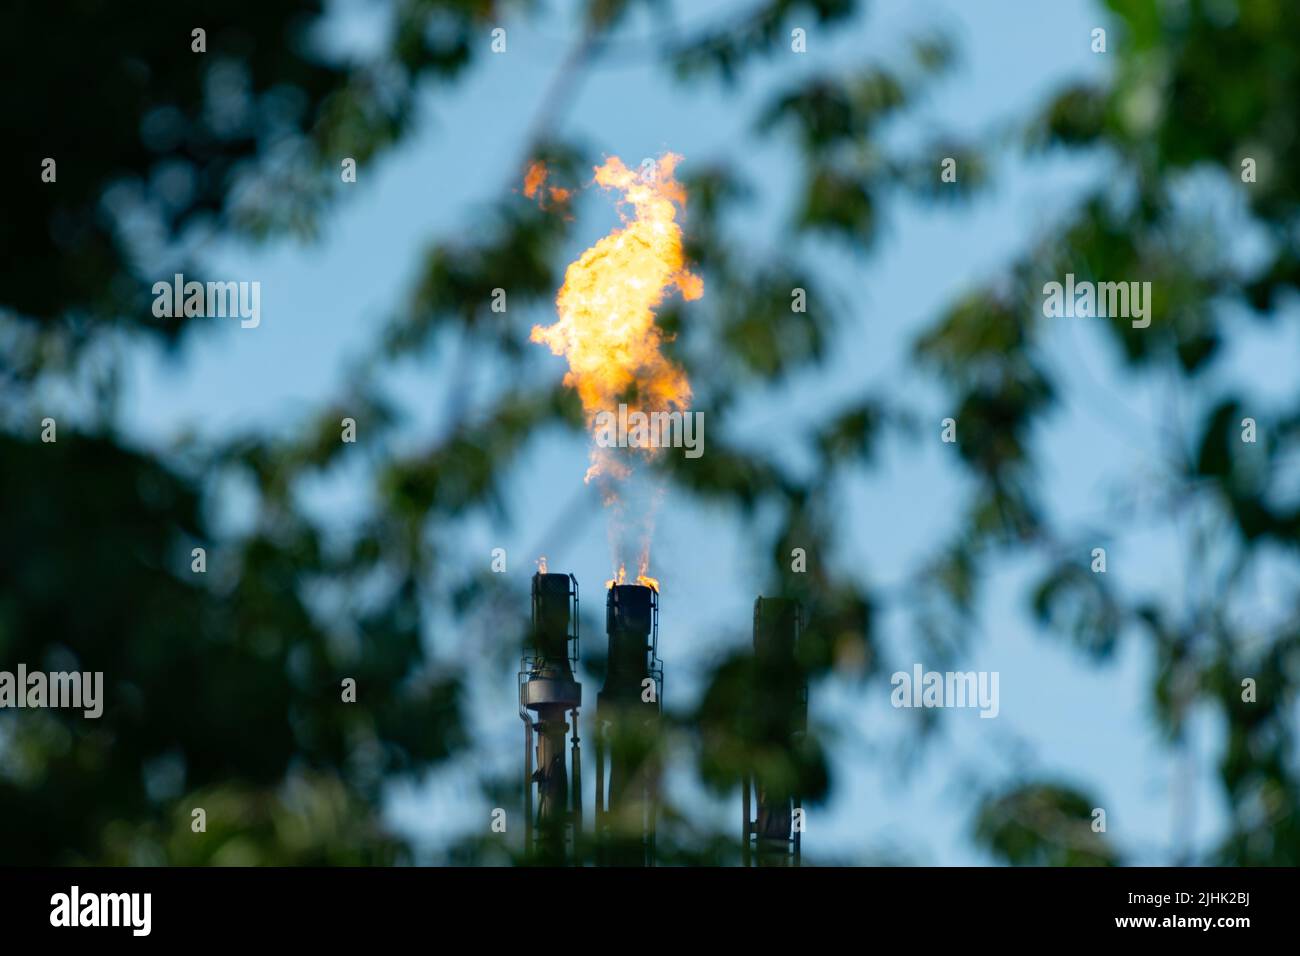 Explosión de gas de refinería de petróleo, pila de llamaradas quemando el exceso de gas, visto desde detrás de un árbol. Llama de refinería de petróleo, llamarada, quema, chimenea, contaminación. REINO UNIDO Foto de stock